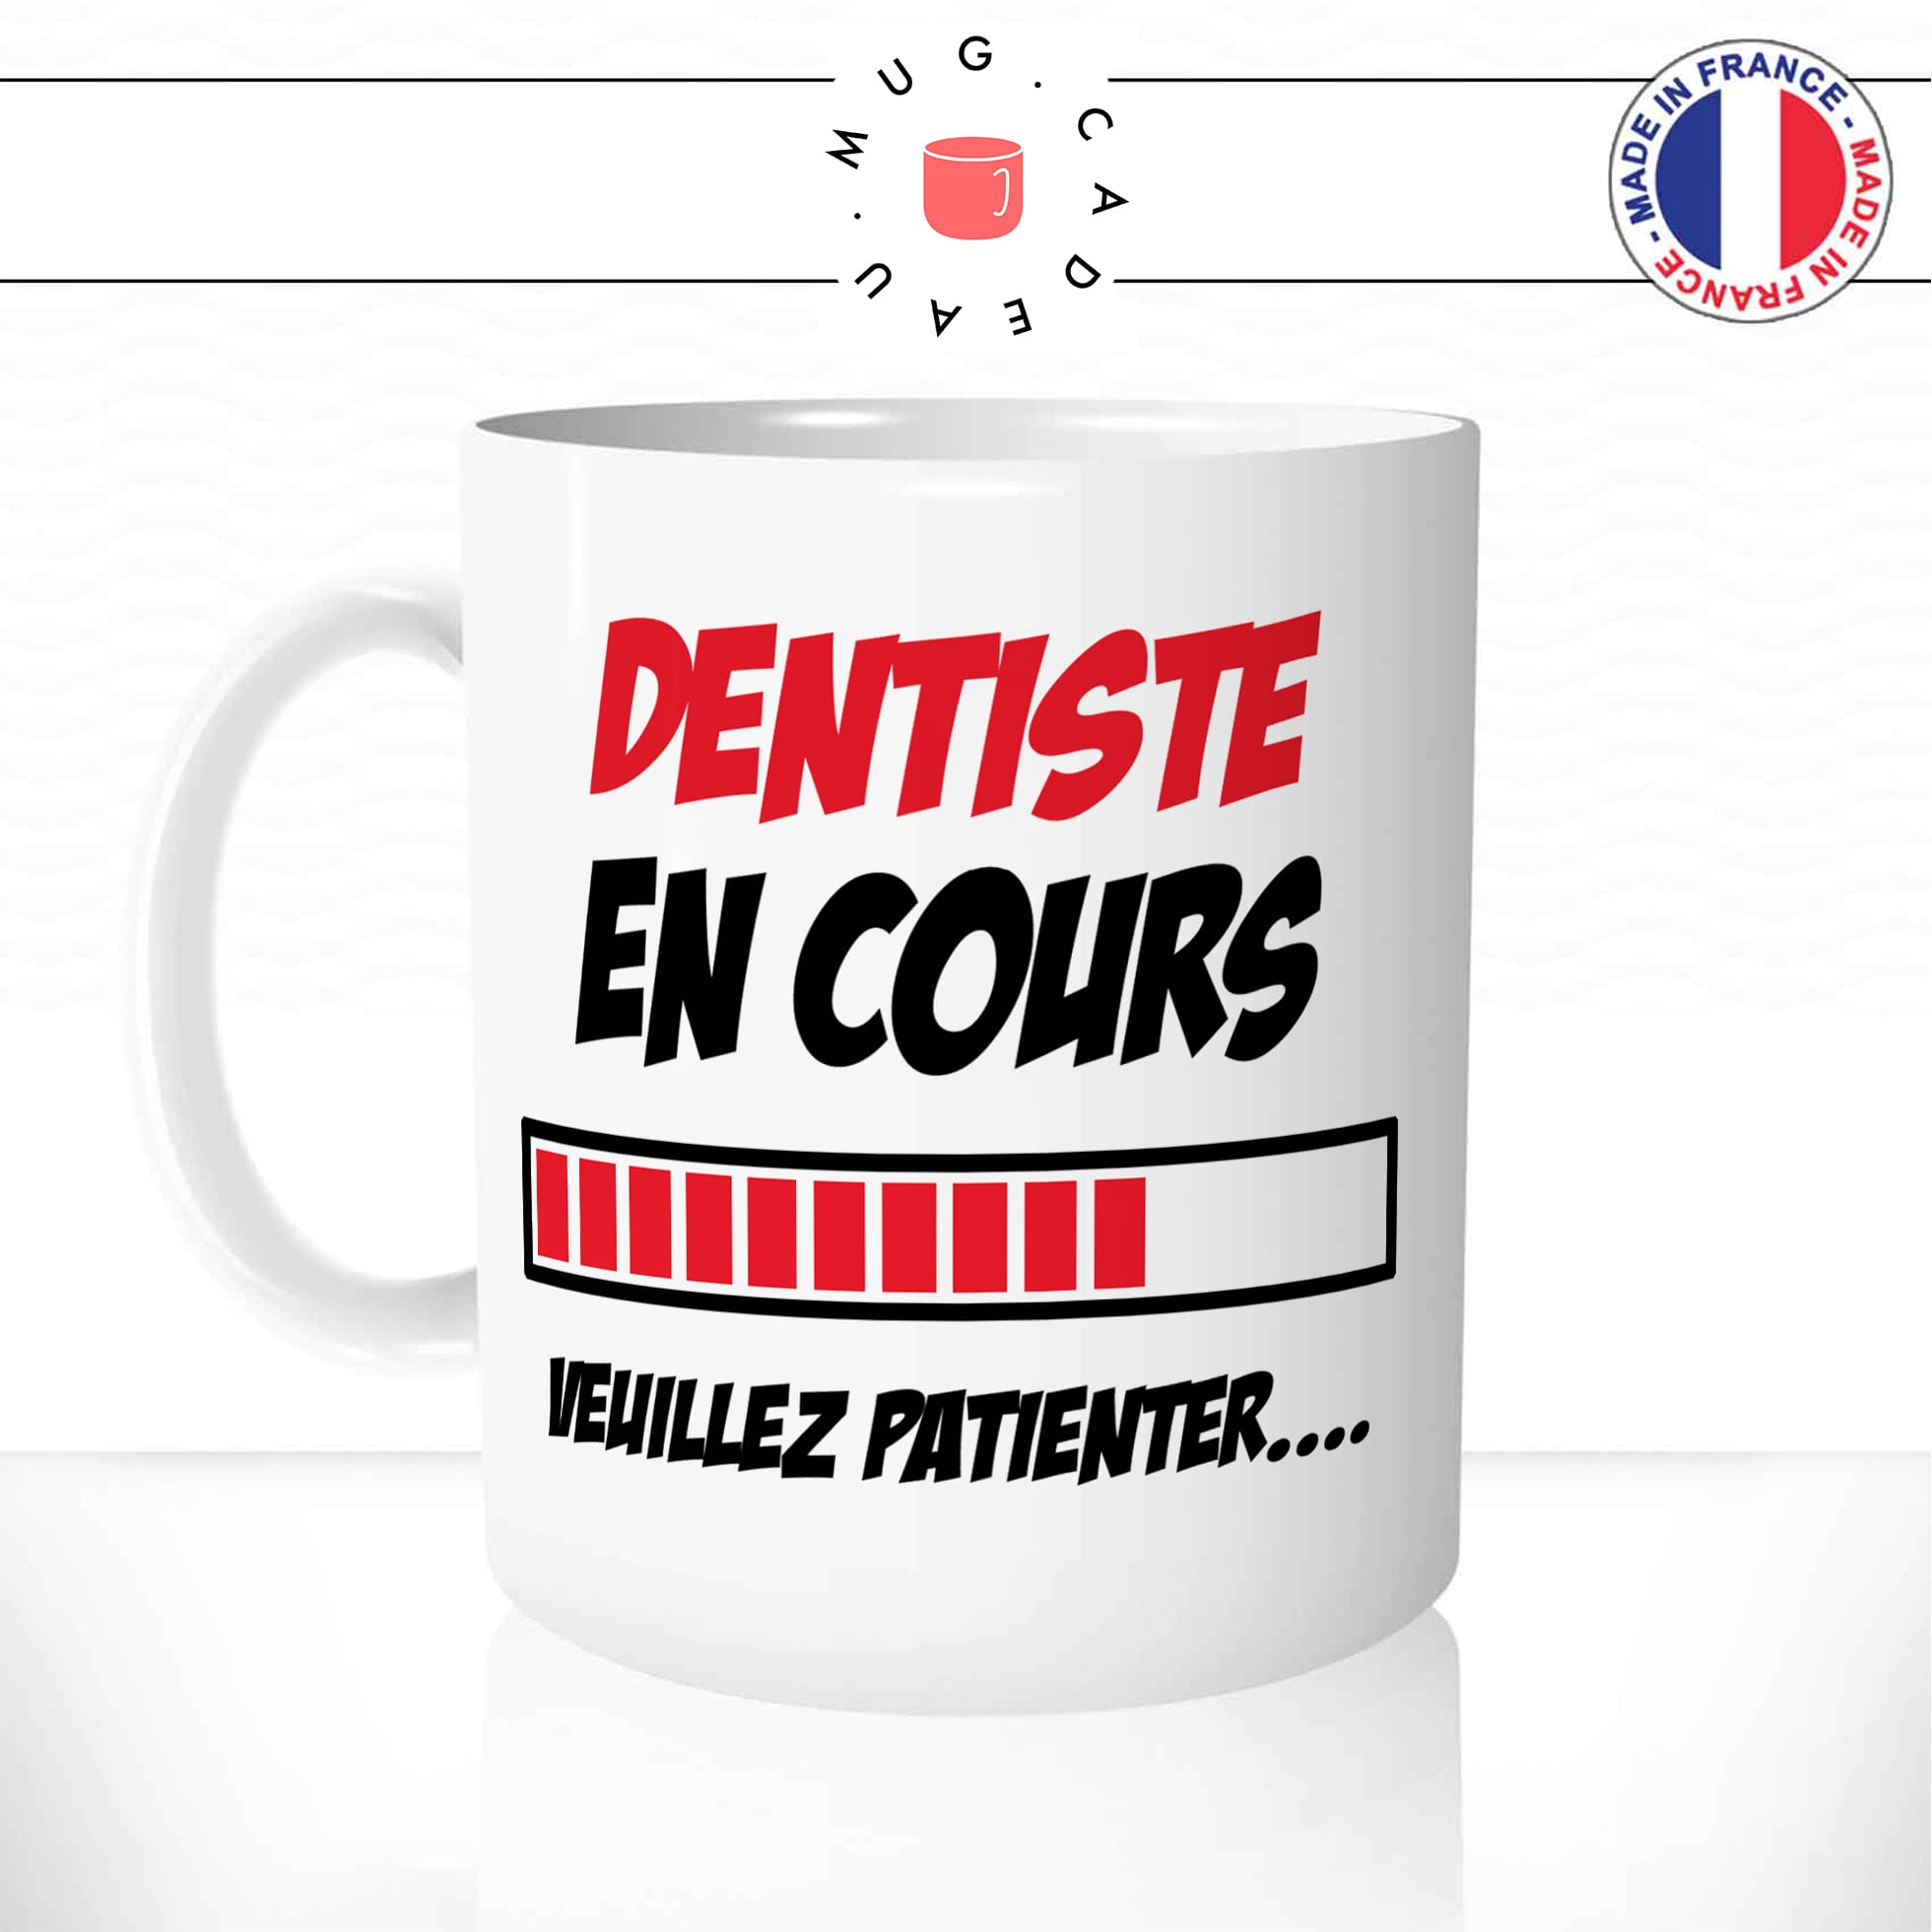 mug-tasse-dentiste-en-cours-patienter-études-medecin-humour-fun-reveil-café-thé-mugs-tasses-idée-cadeau-original-personnalisée-min